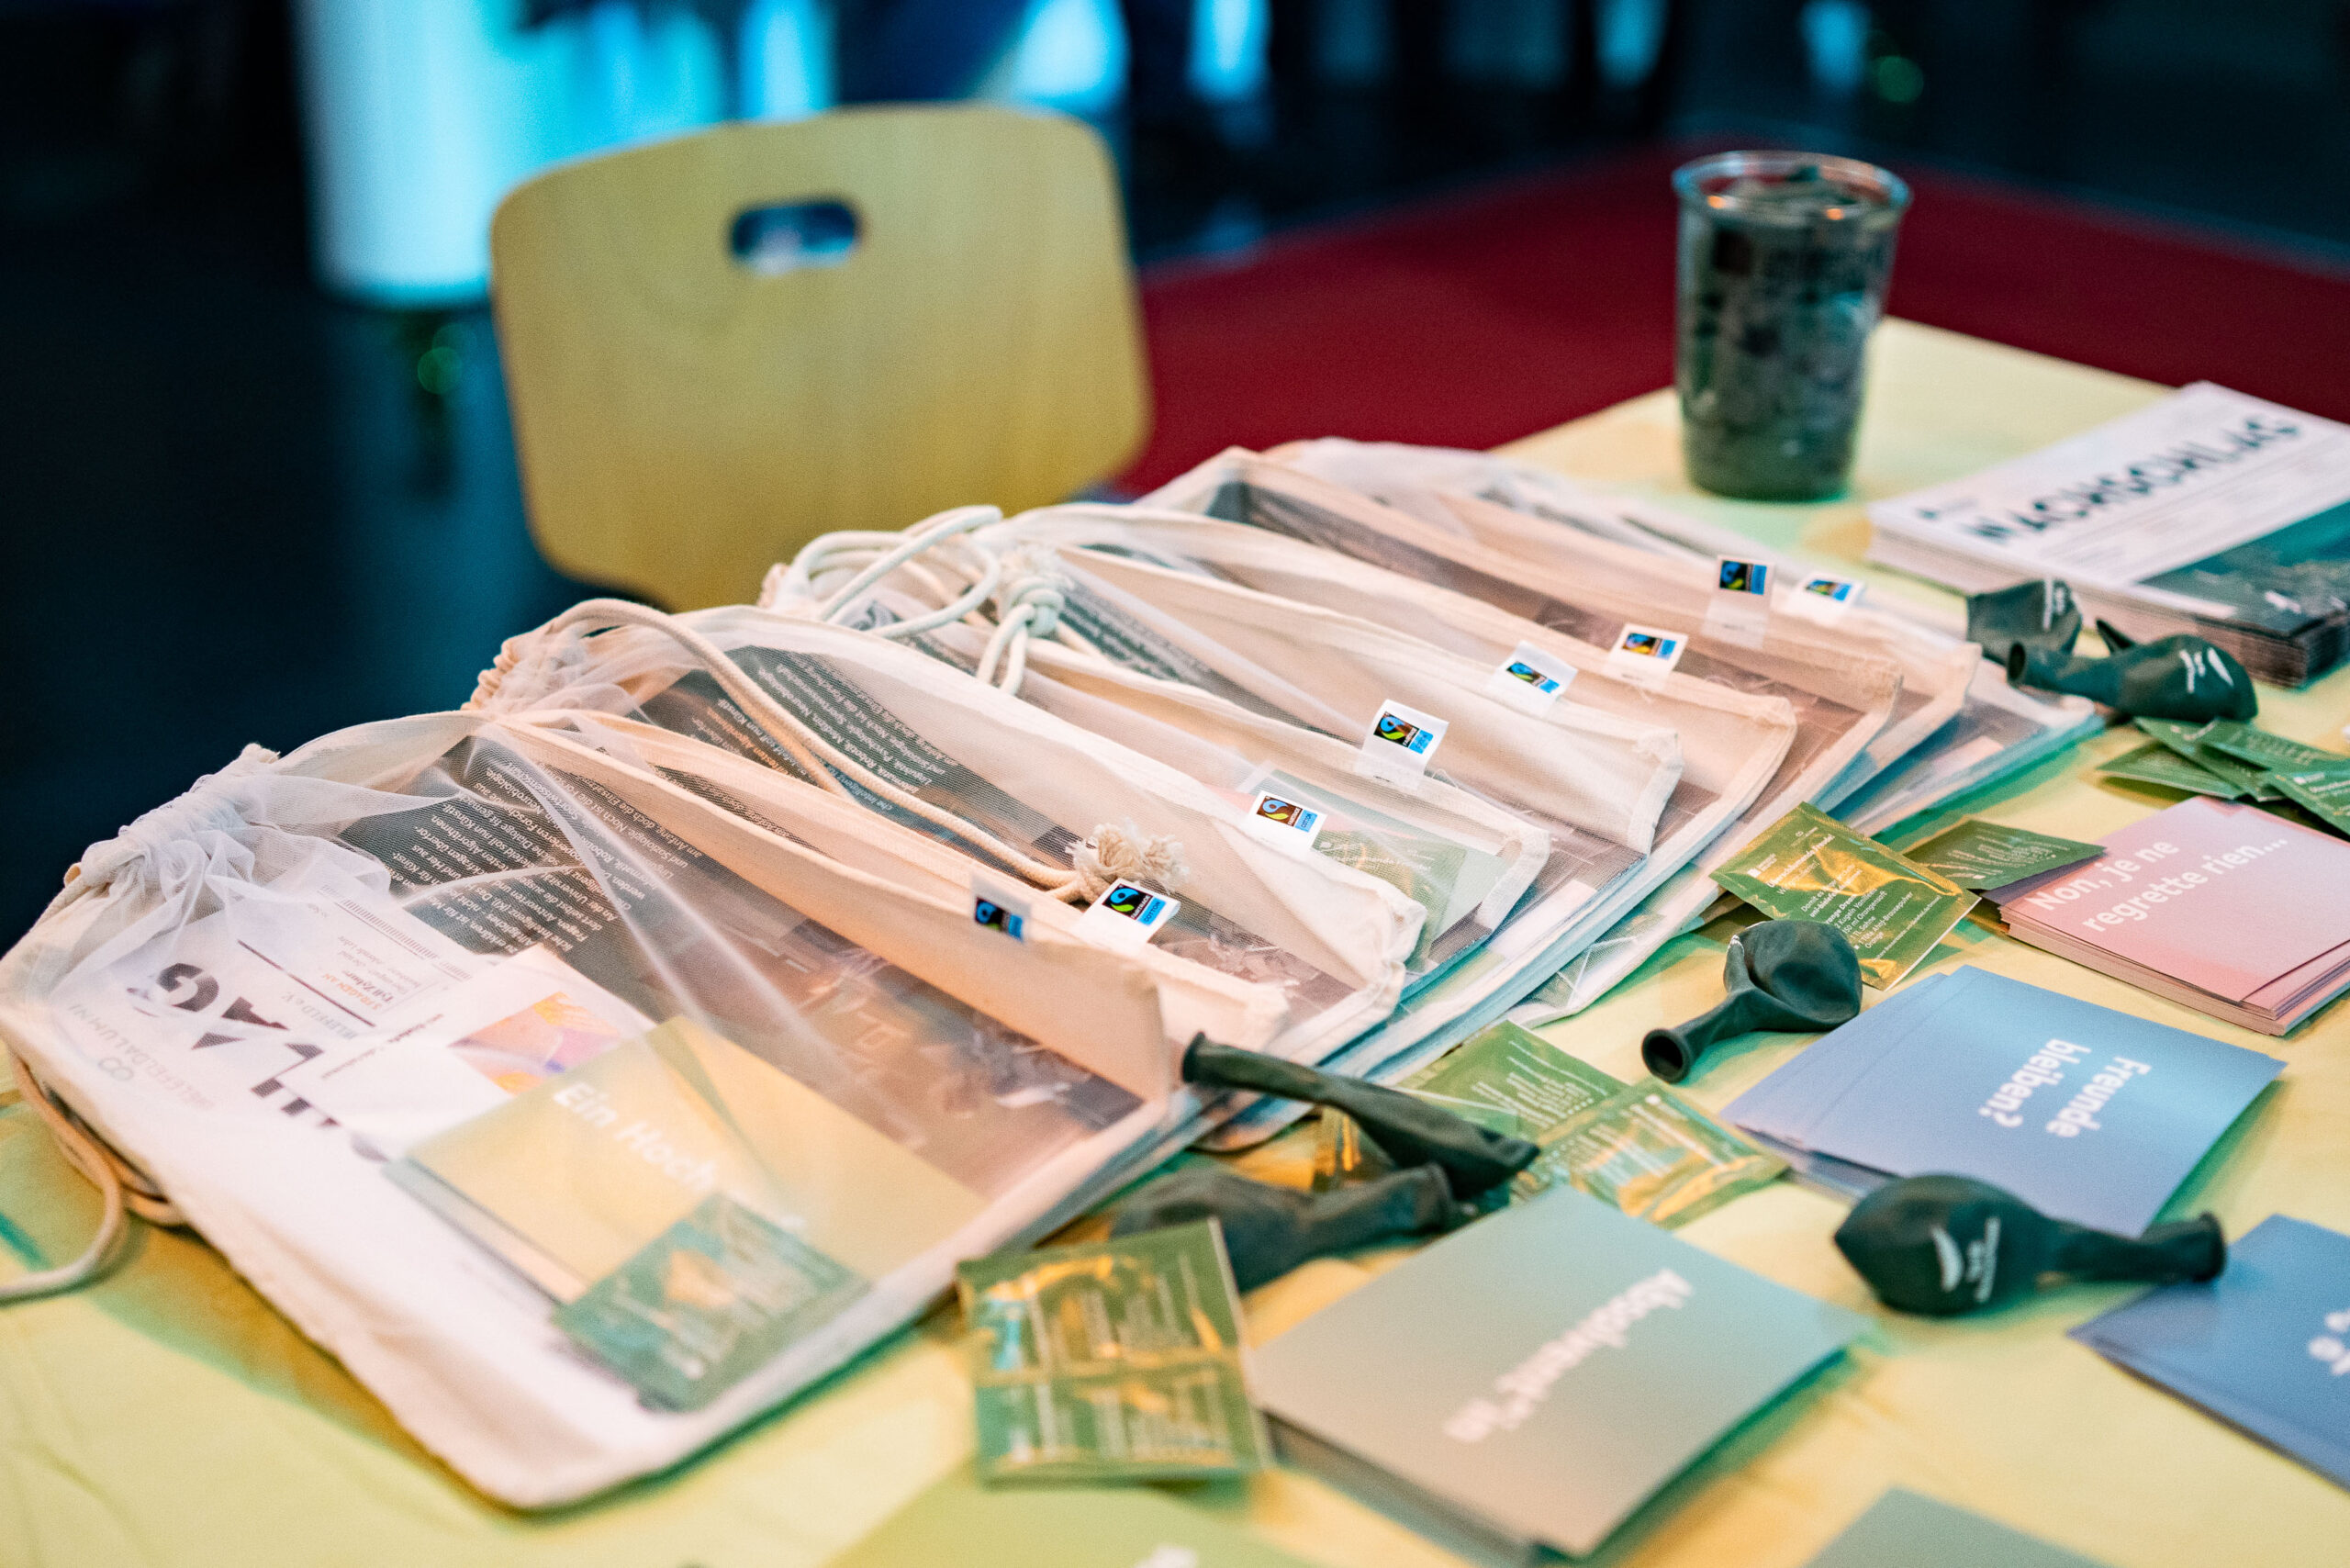 Tag für Absolvent:innen: Auf einem Tisch am Stand des Absolvent Netzwerks liegen kleine Geschenke für alle Absolvent:innen aus: Brötchentüten, Postkarten, Luftballons und Brausepäckchen.